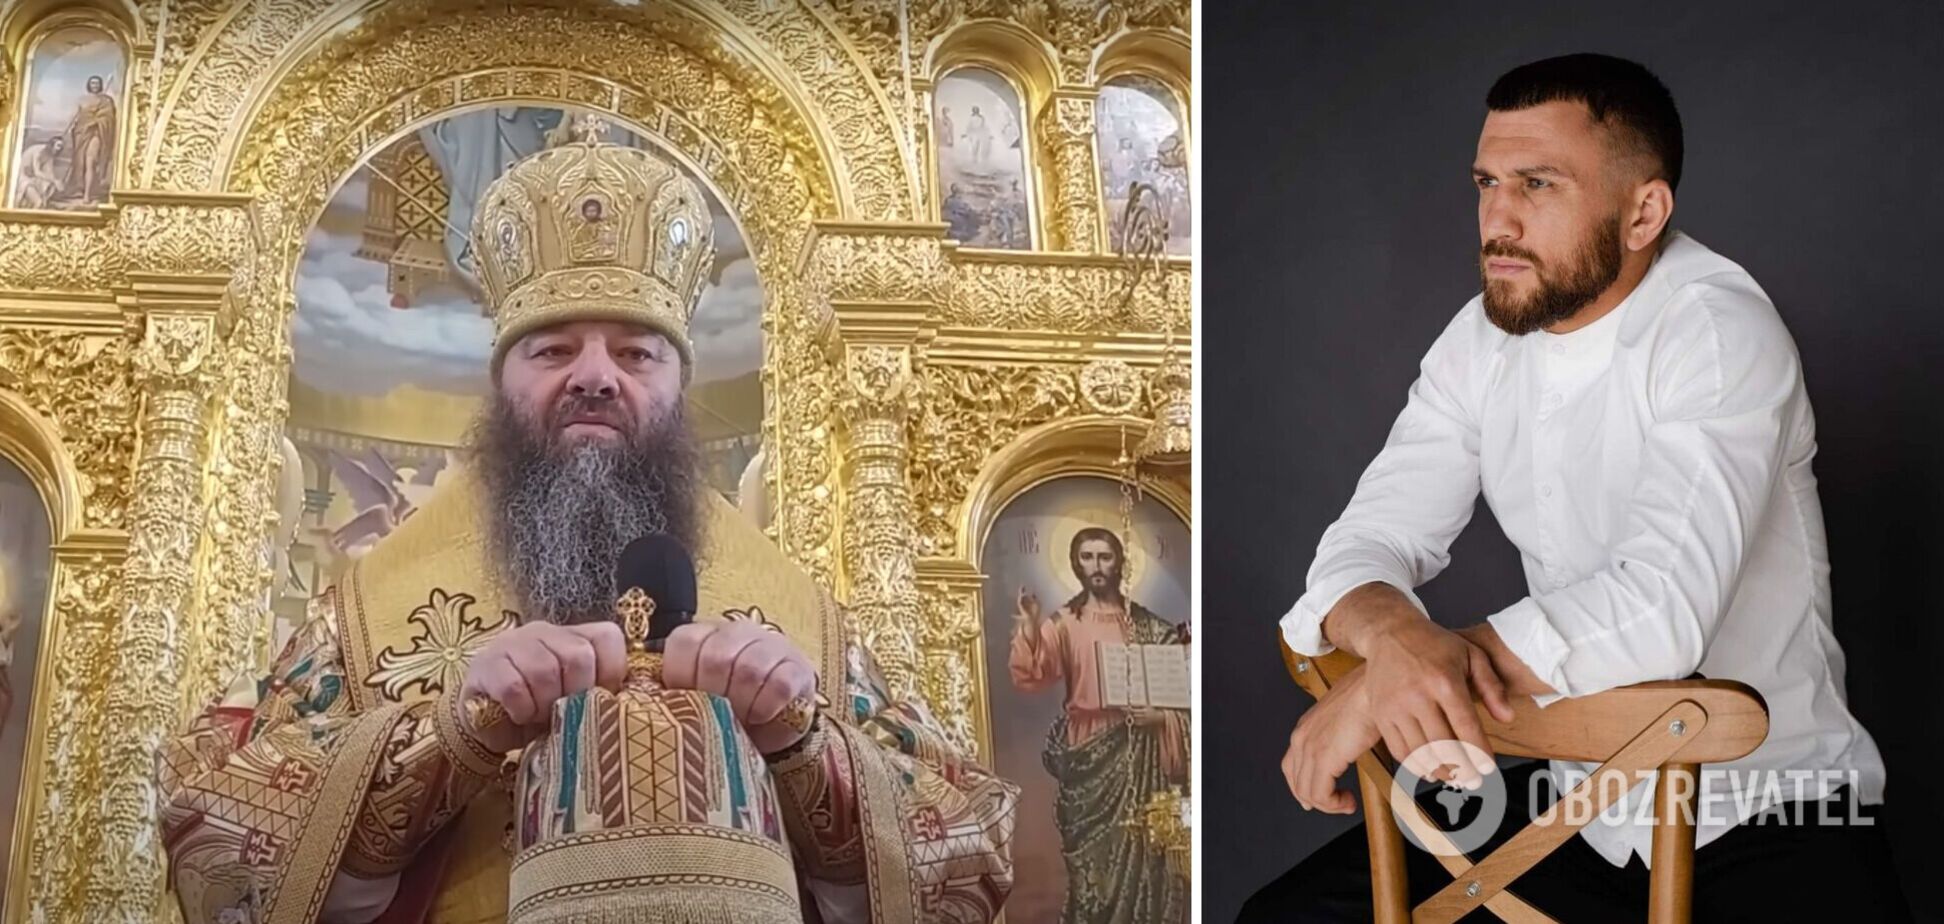 Ломаченко поздравил выступлением московского патриархата, где Украина обвиняется в начале войны против церкви